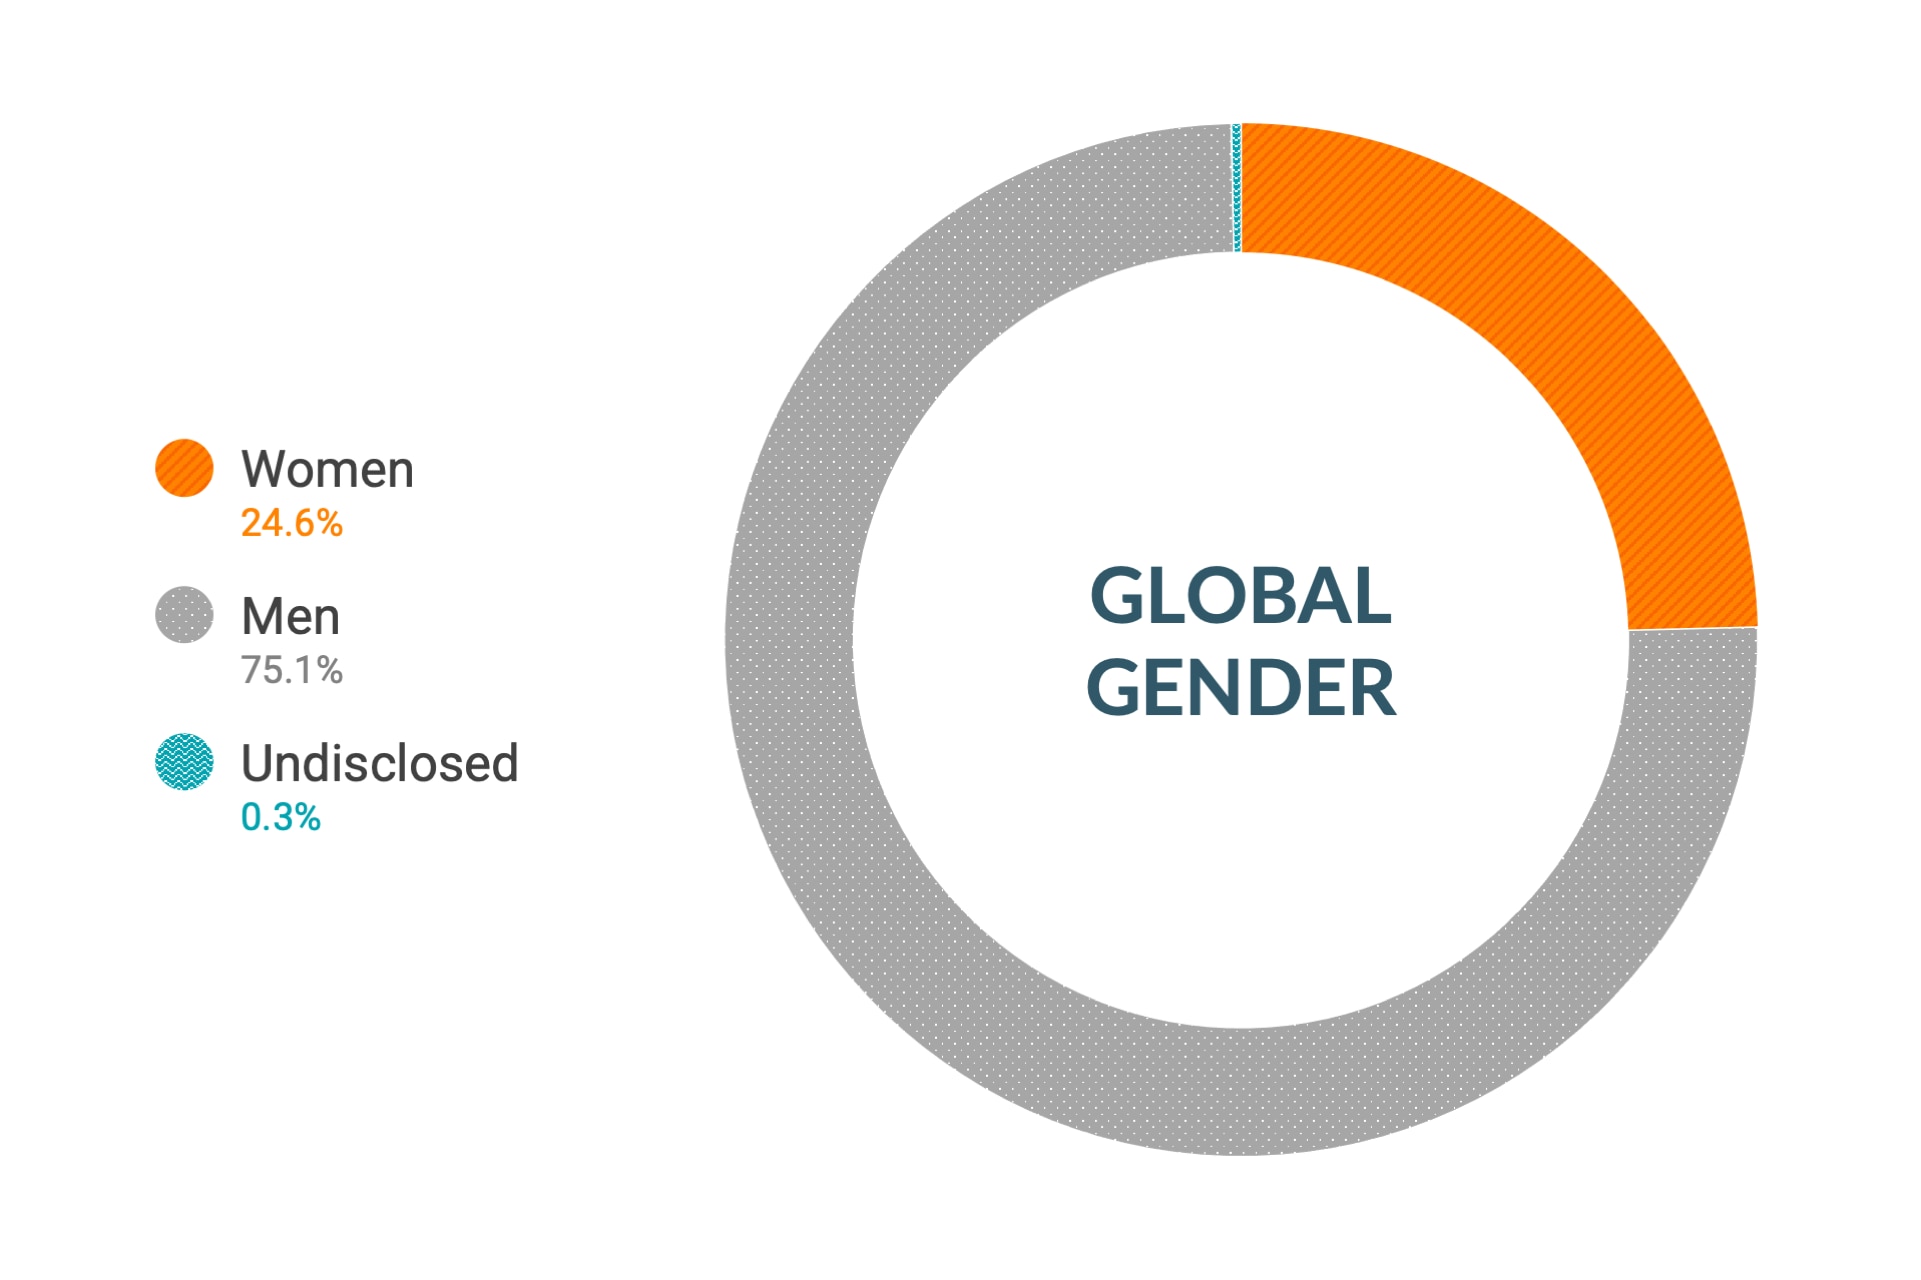 Cloudera のダイバーシティとインクルージョンデータ (世界全体の性別比): 女性25.1%、男性74.6%、回答なし0.3%